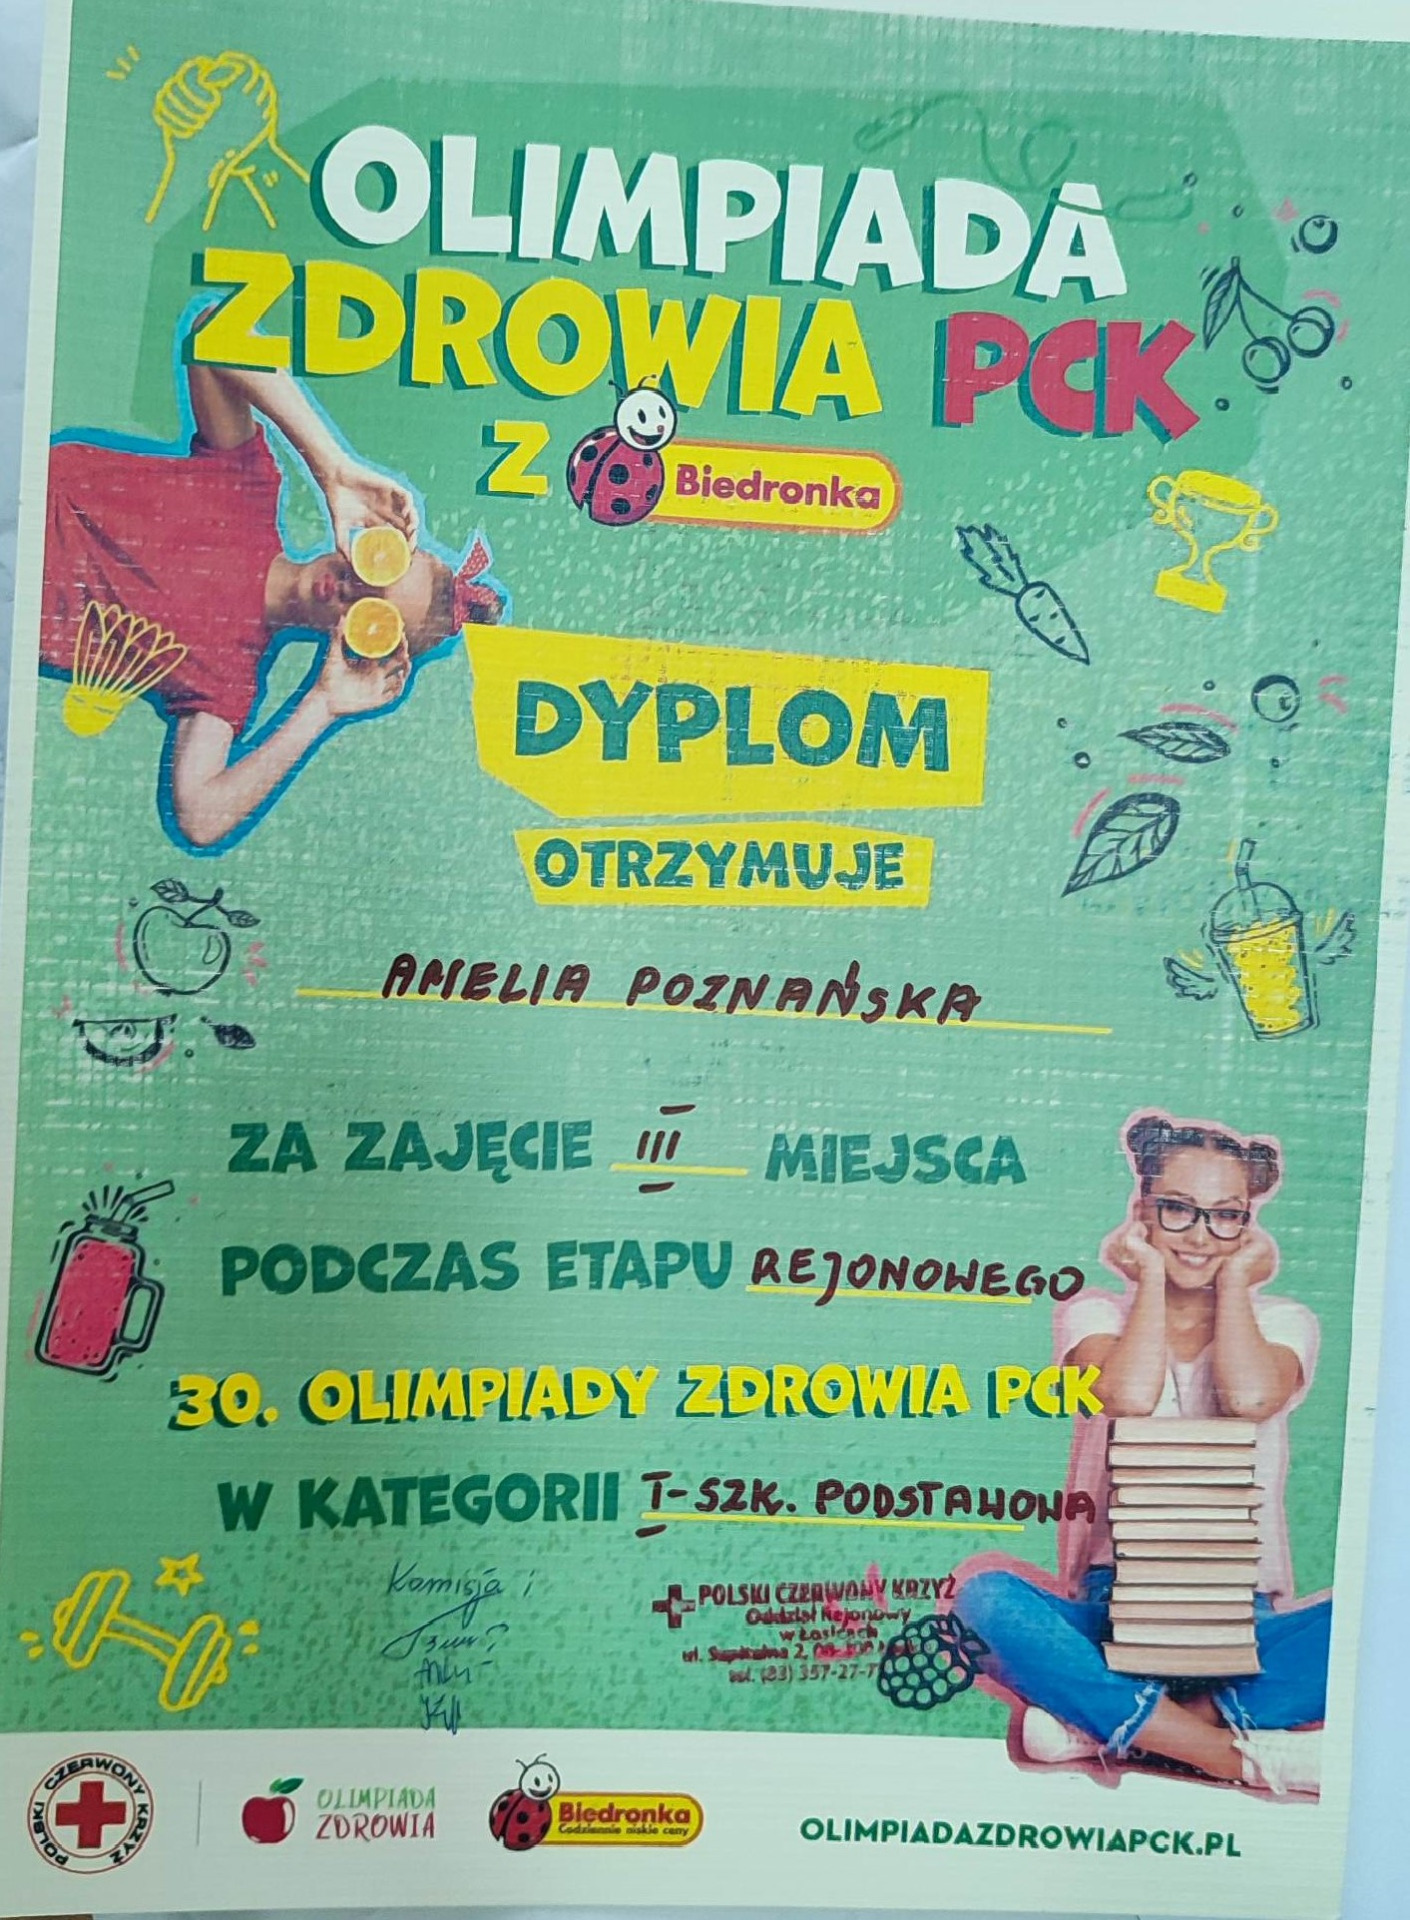 Olimpiada Zdrowia PCK z Biedronką - Obrazek 1